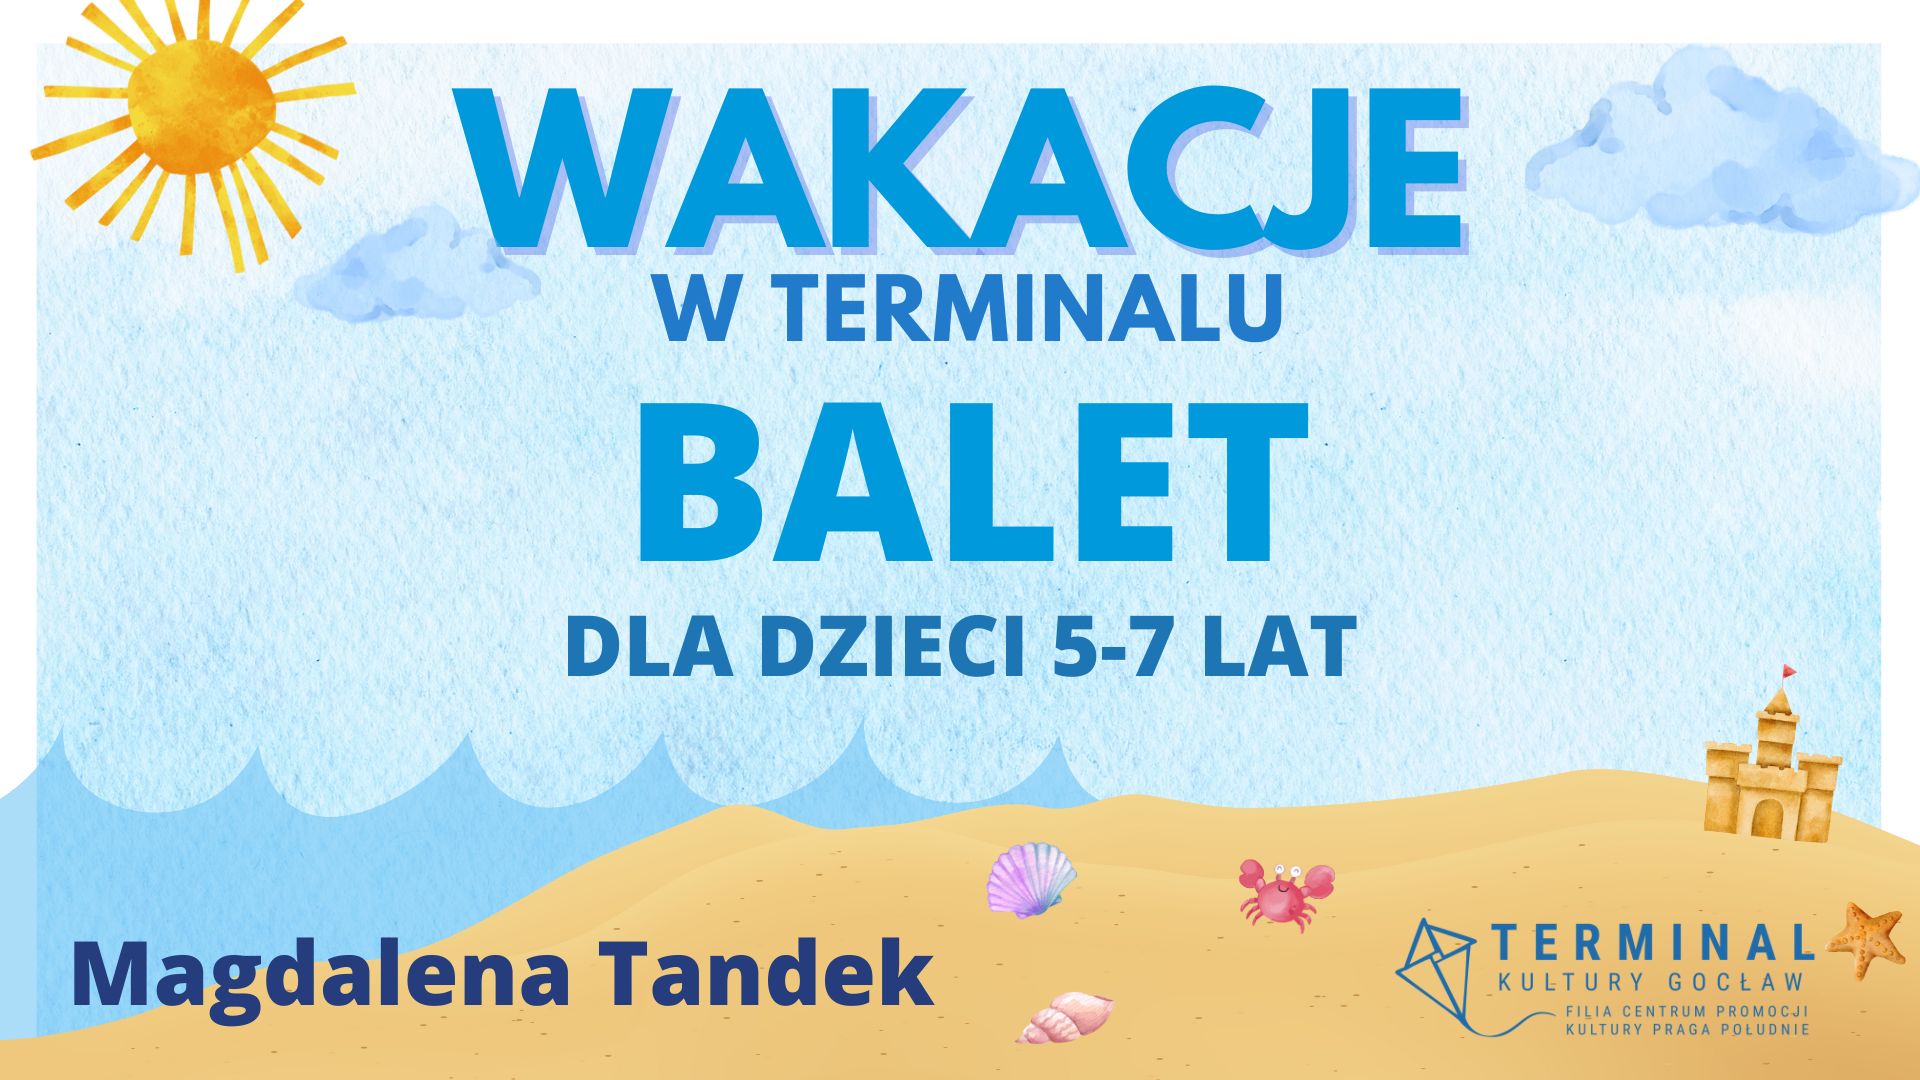 WAKACJE - BALET DLA DZIECI 5-7 LAT - Magdalena Tandek